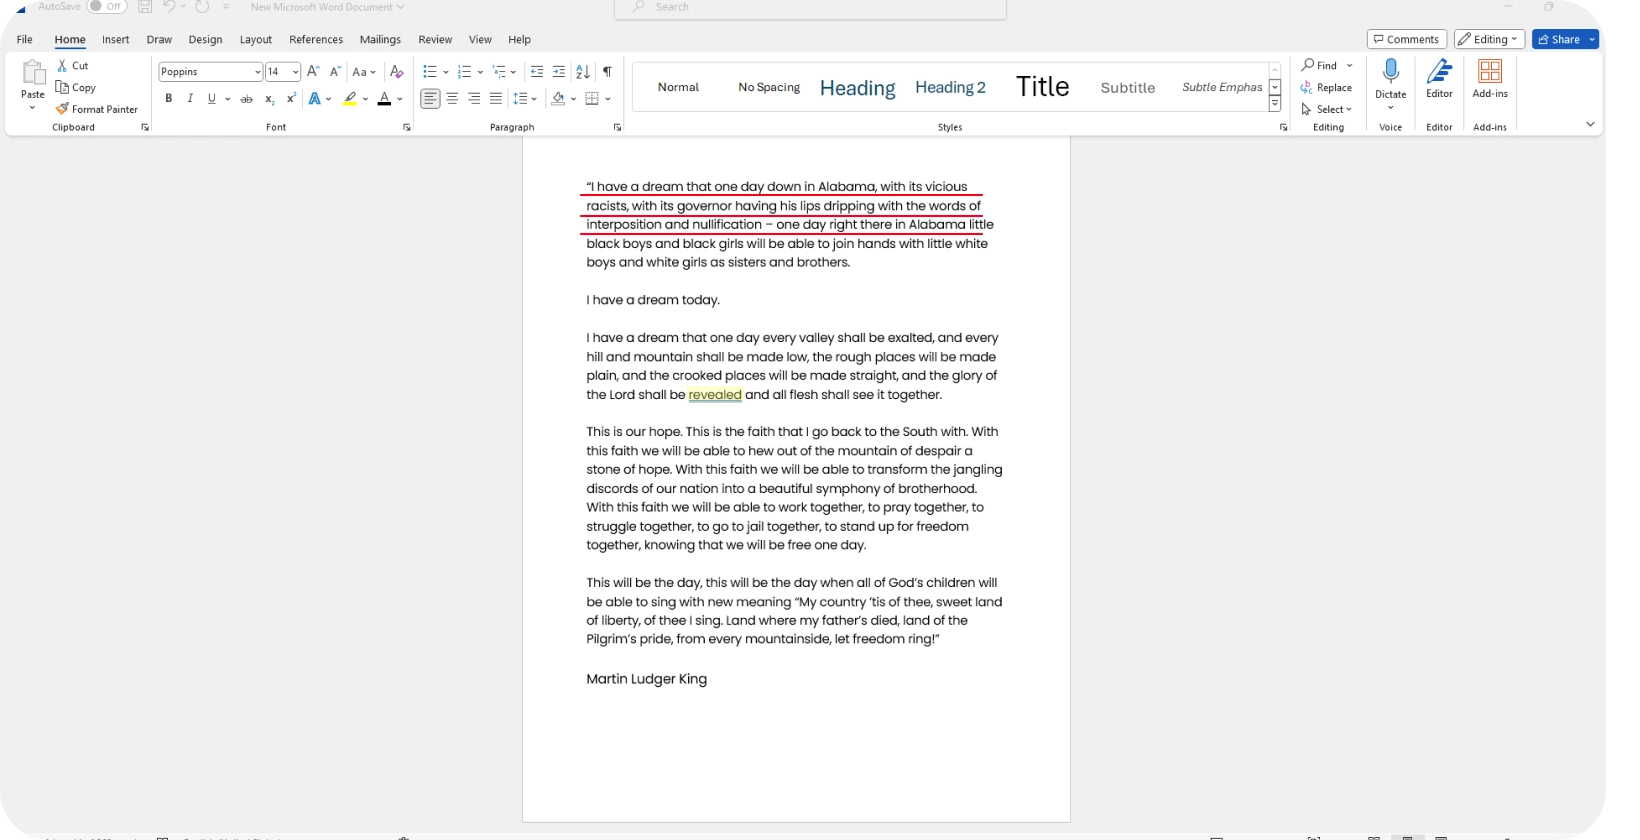 Microsoft Word documento que apresenta a transcrição da fala, destacando a eficiência do recurso de ditado.